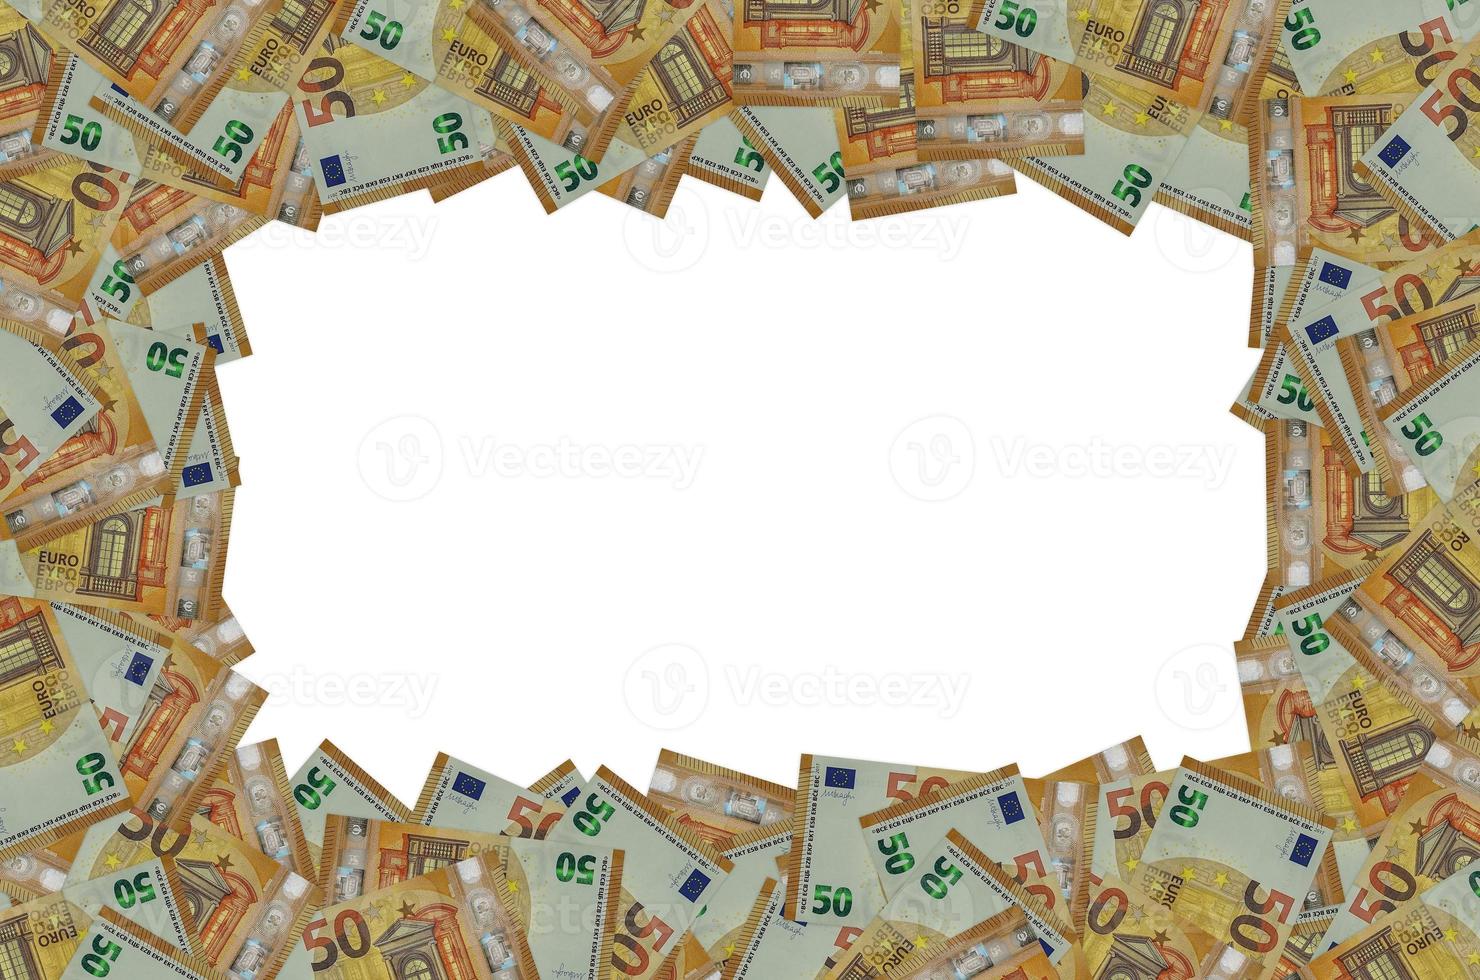 parte del patrón del primer plano del billete de 50 euros con pequeños detalles marrones foto